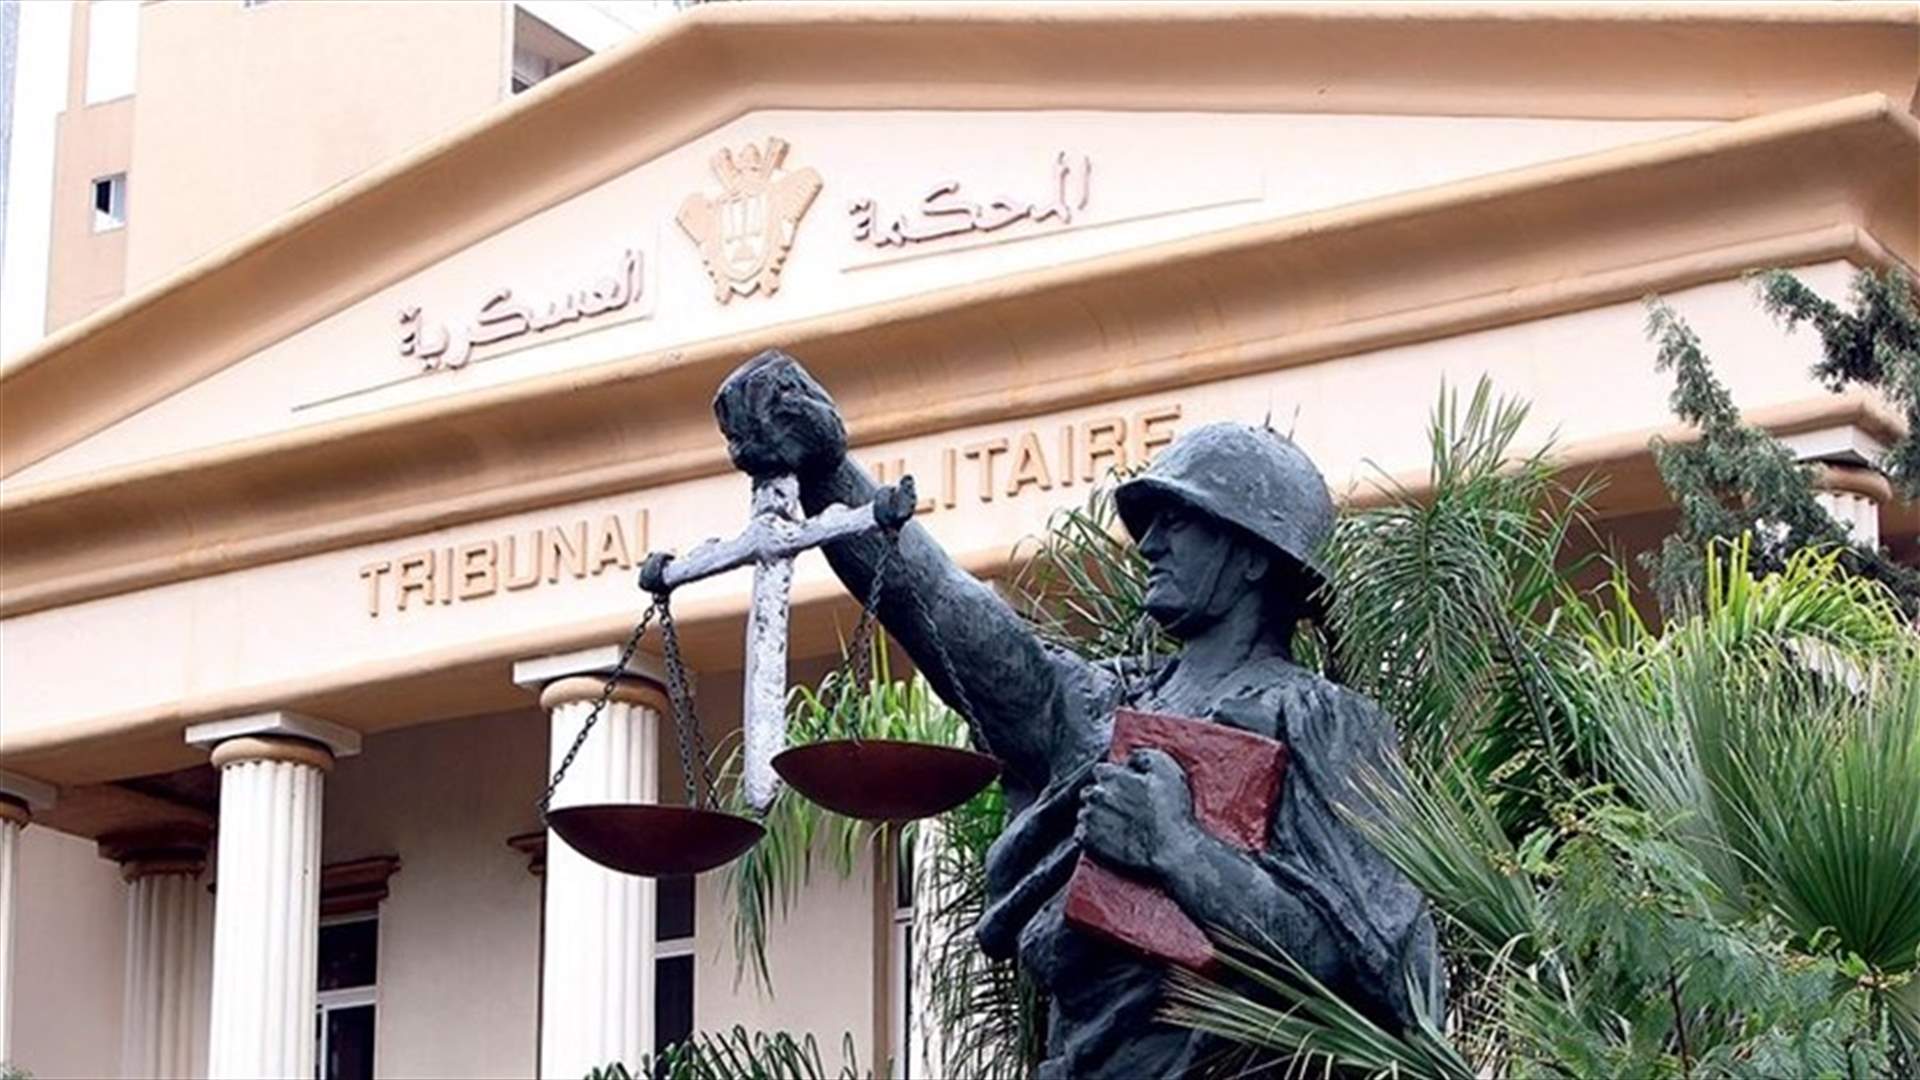 إدانة متهم بتزوير أختام معاملات في مرفأ بيروت